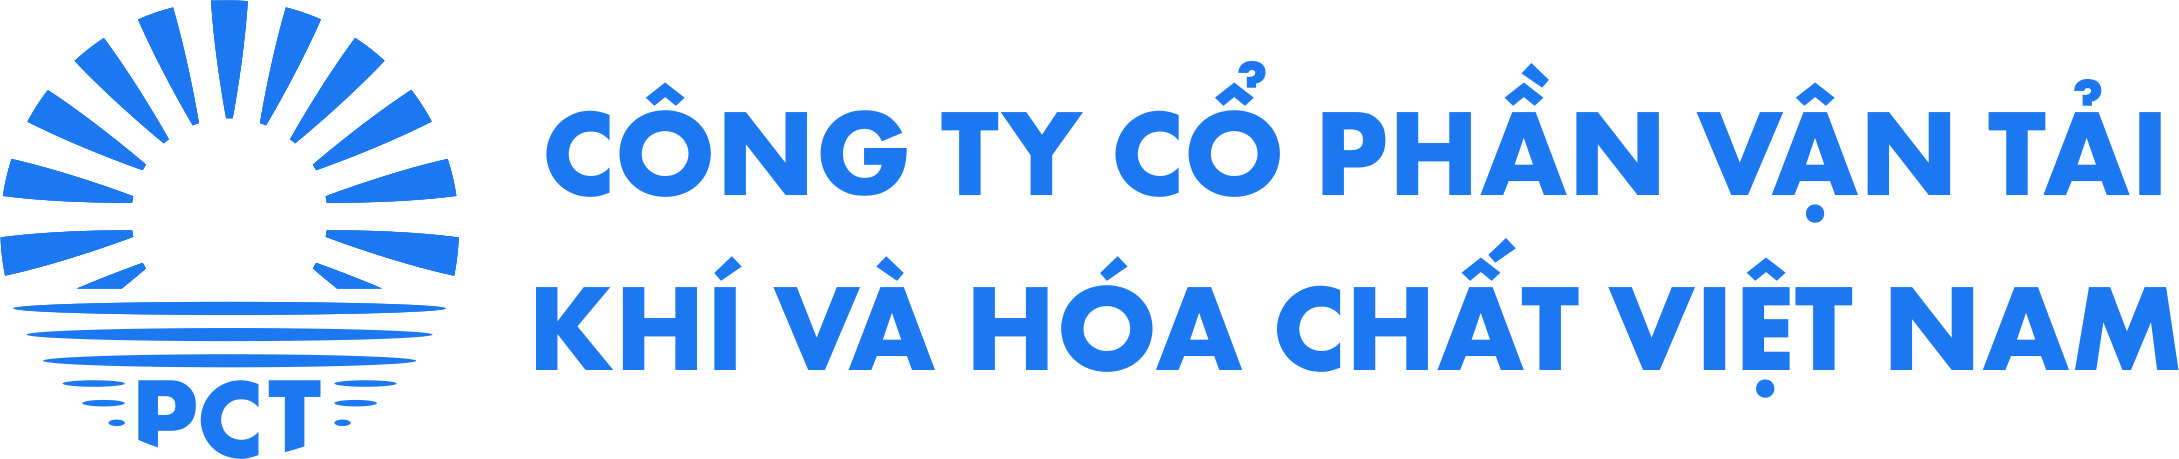 Thông báo thay đổi nhãn hiệu (logo) của Công ty CP Vận tải Khí và Hóa chất Việt Nam